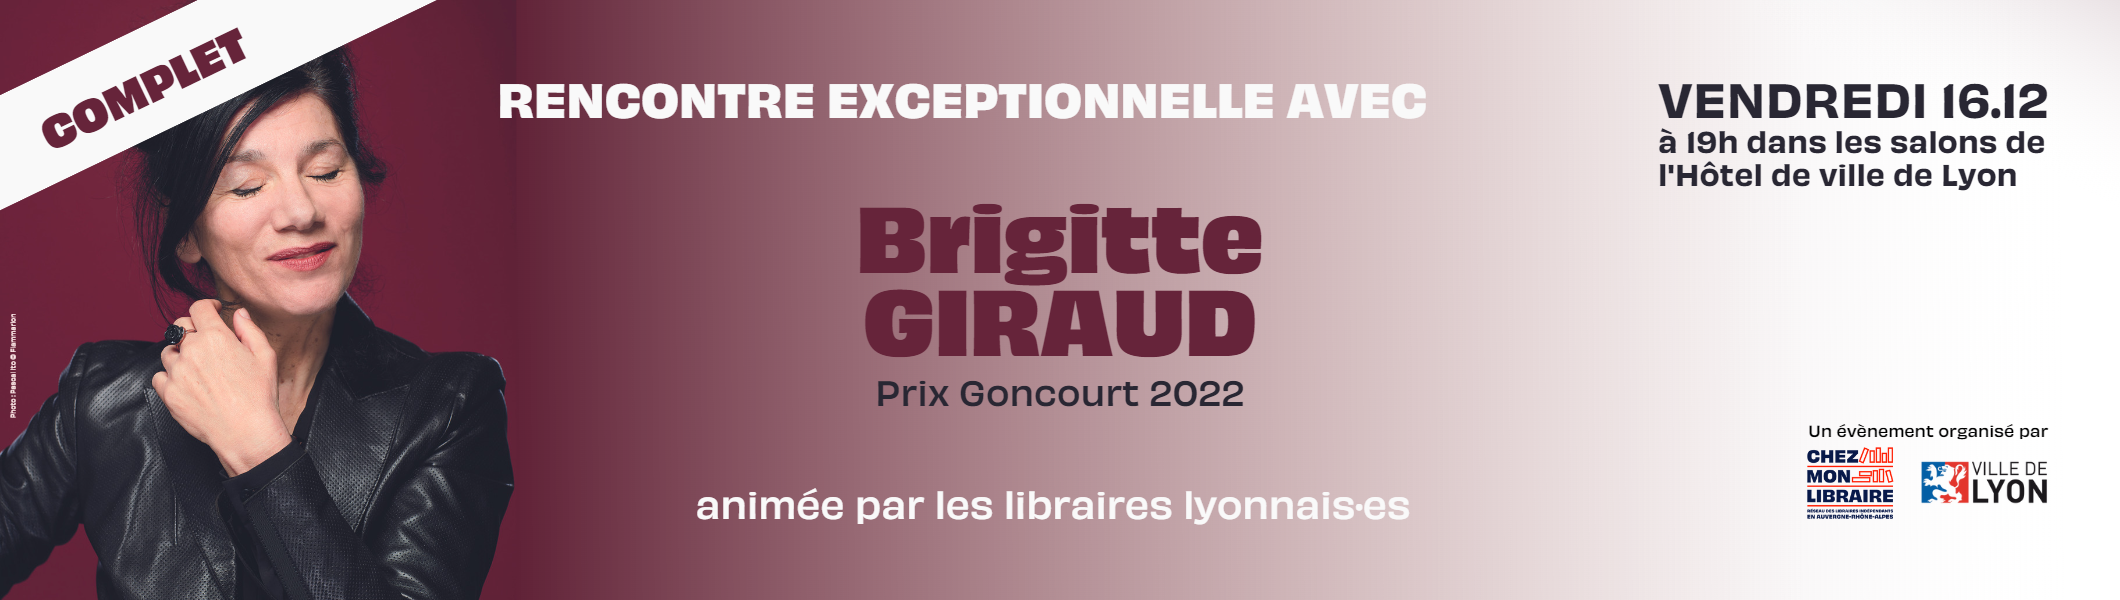 Rencontre exceptionnelle avec Brigitte Giraud le 16 décembre à Lyon !